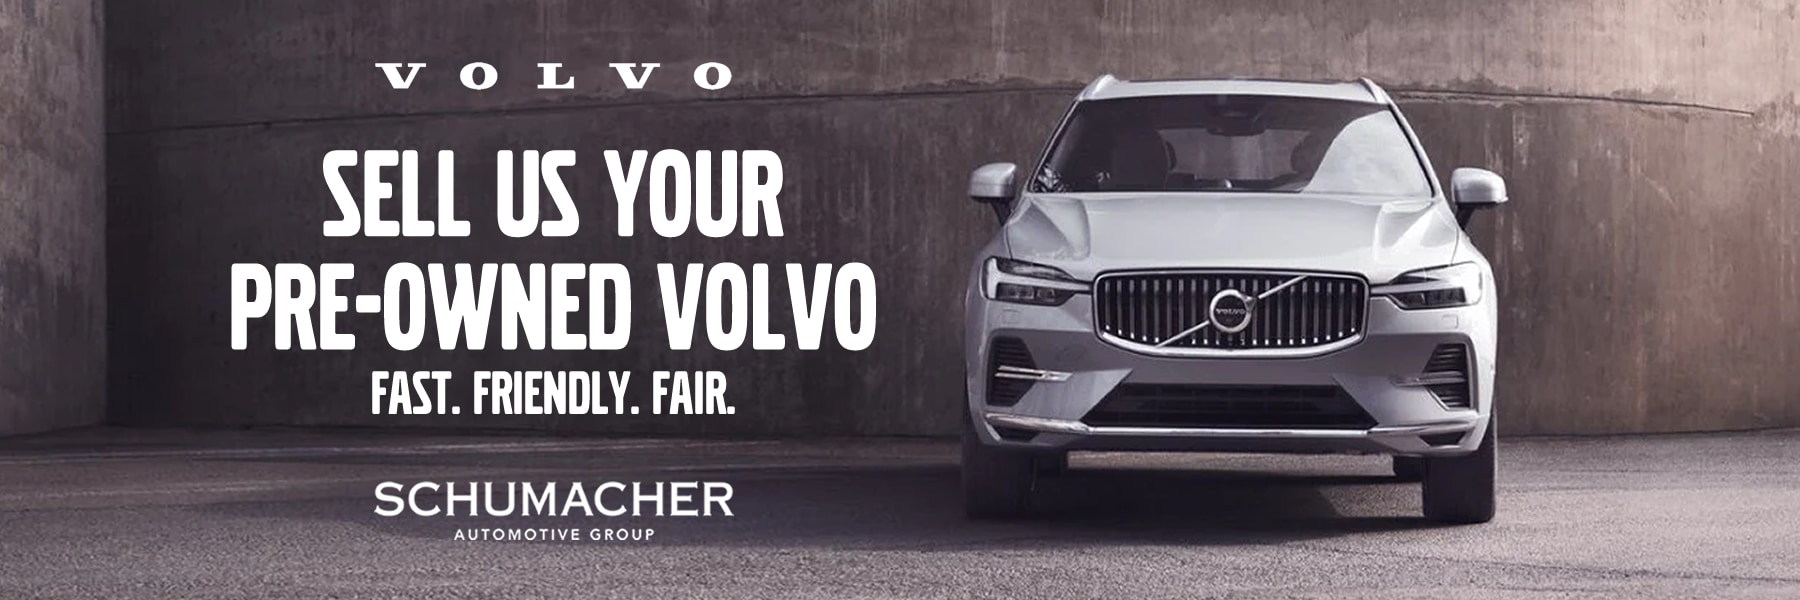 Volvo Lease Deals West Palm Beach FL Schumacher Volvo Cars of the